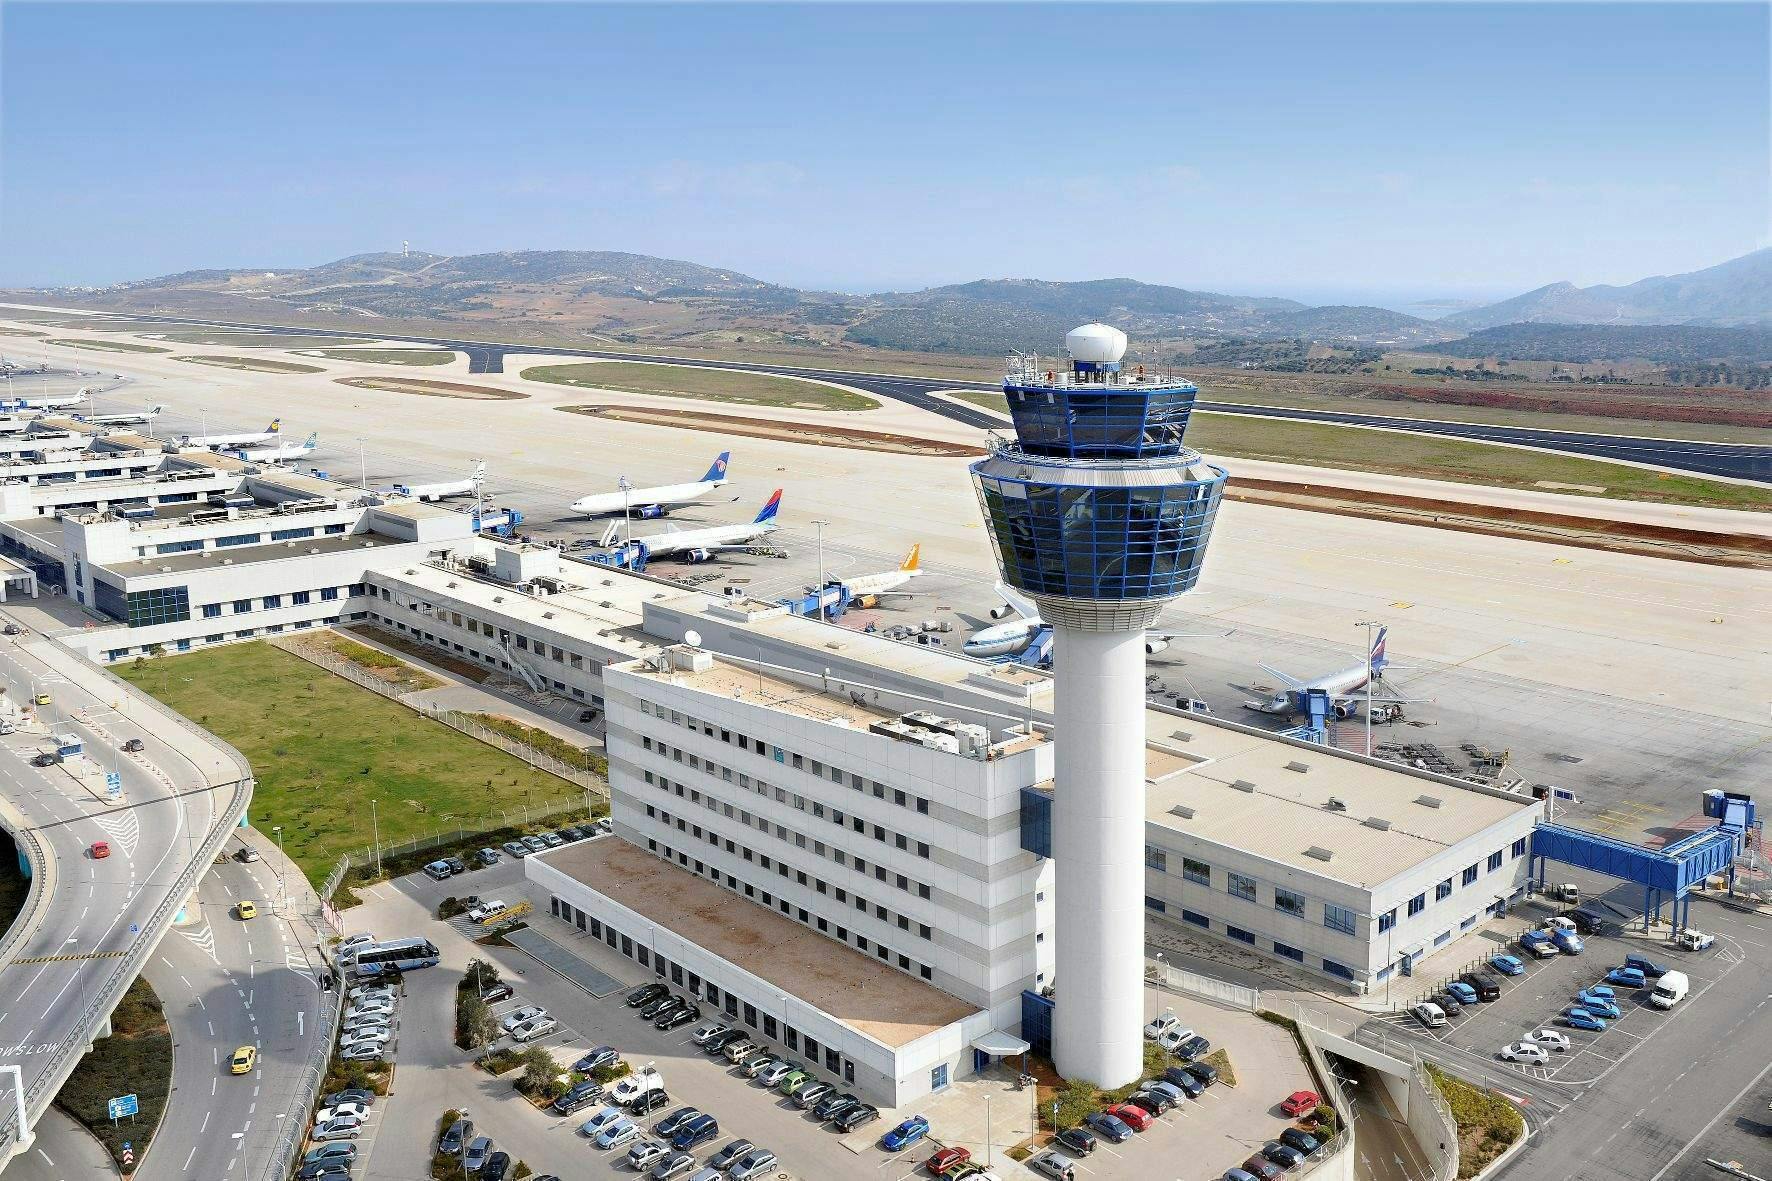 Halb Griechenland glaubt, dass ein deutscher Baukonzern  beim Athener Flughafen Hunderte Millionen Euro an Steuern hinterzogen hat. Stimmt das?